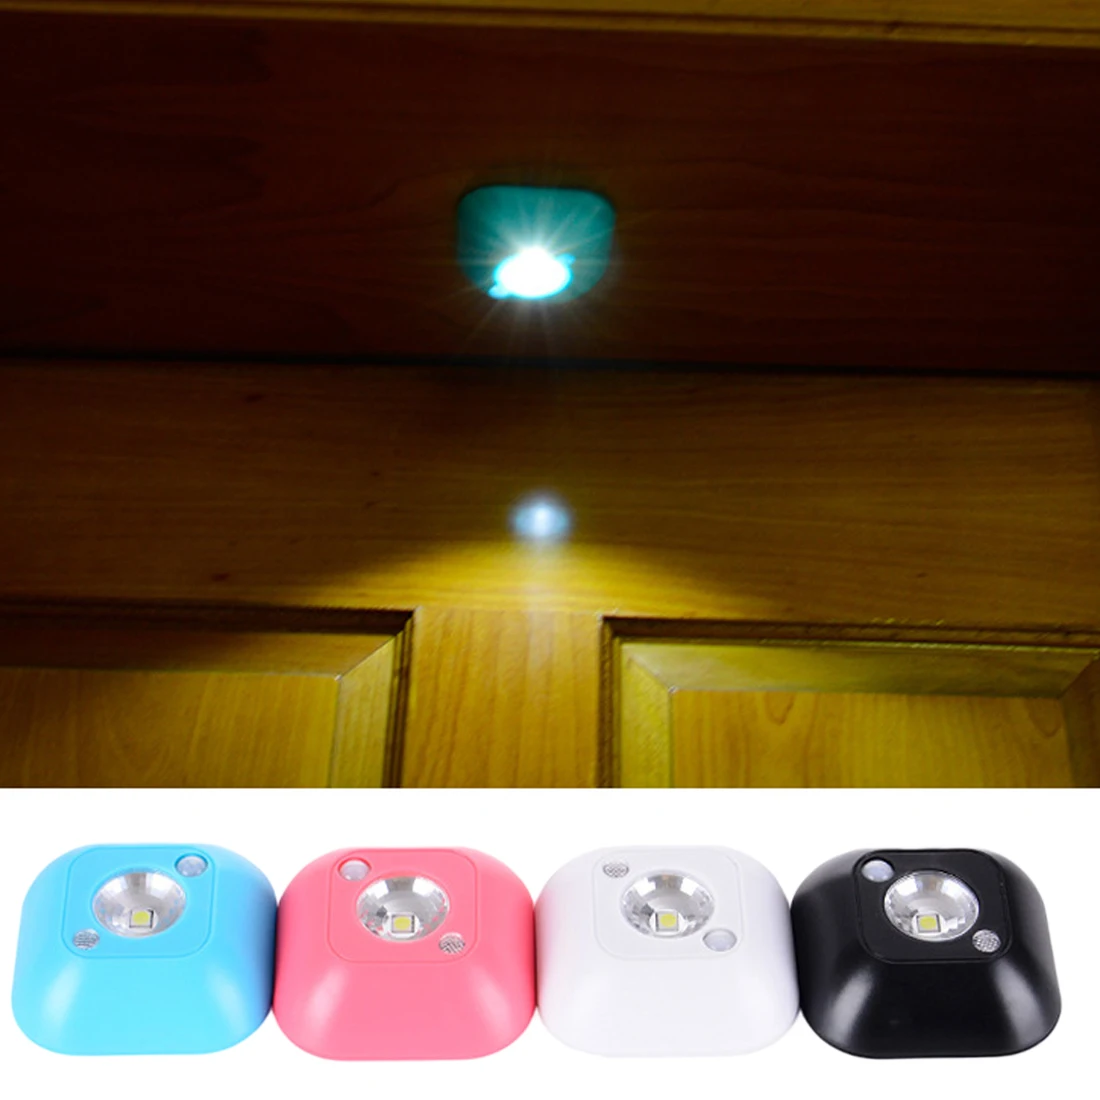 1 шт. светодиодный датчик ночного света индукционный инфракрасный датчик движения светильник на батарейках настенный светильник шкаф лестница свет умный свет